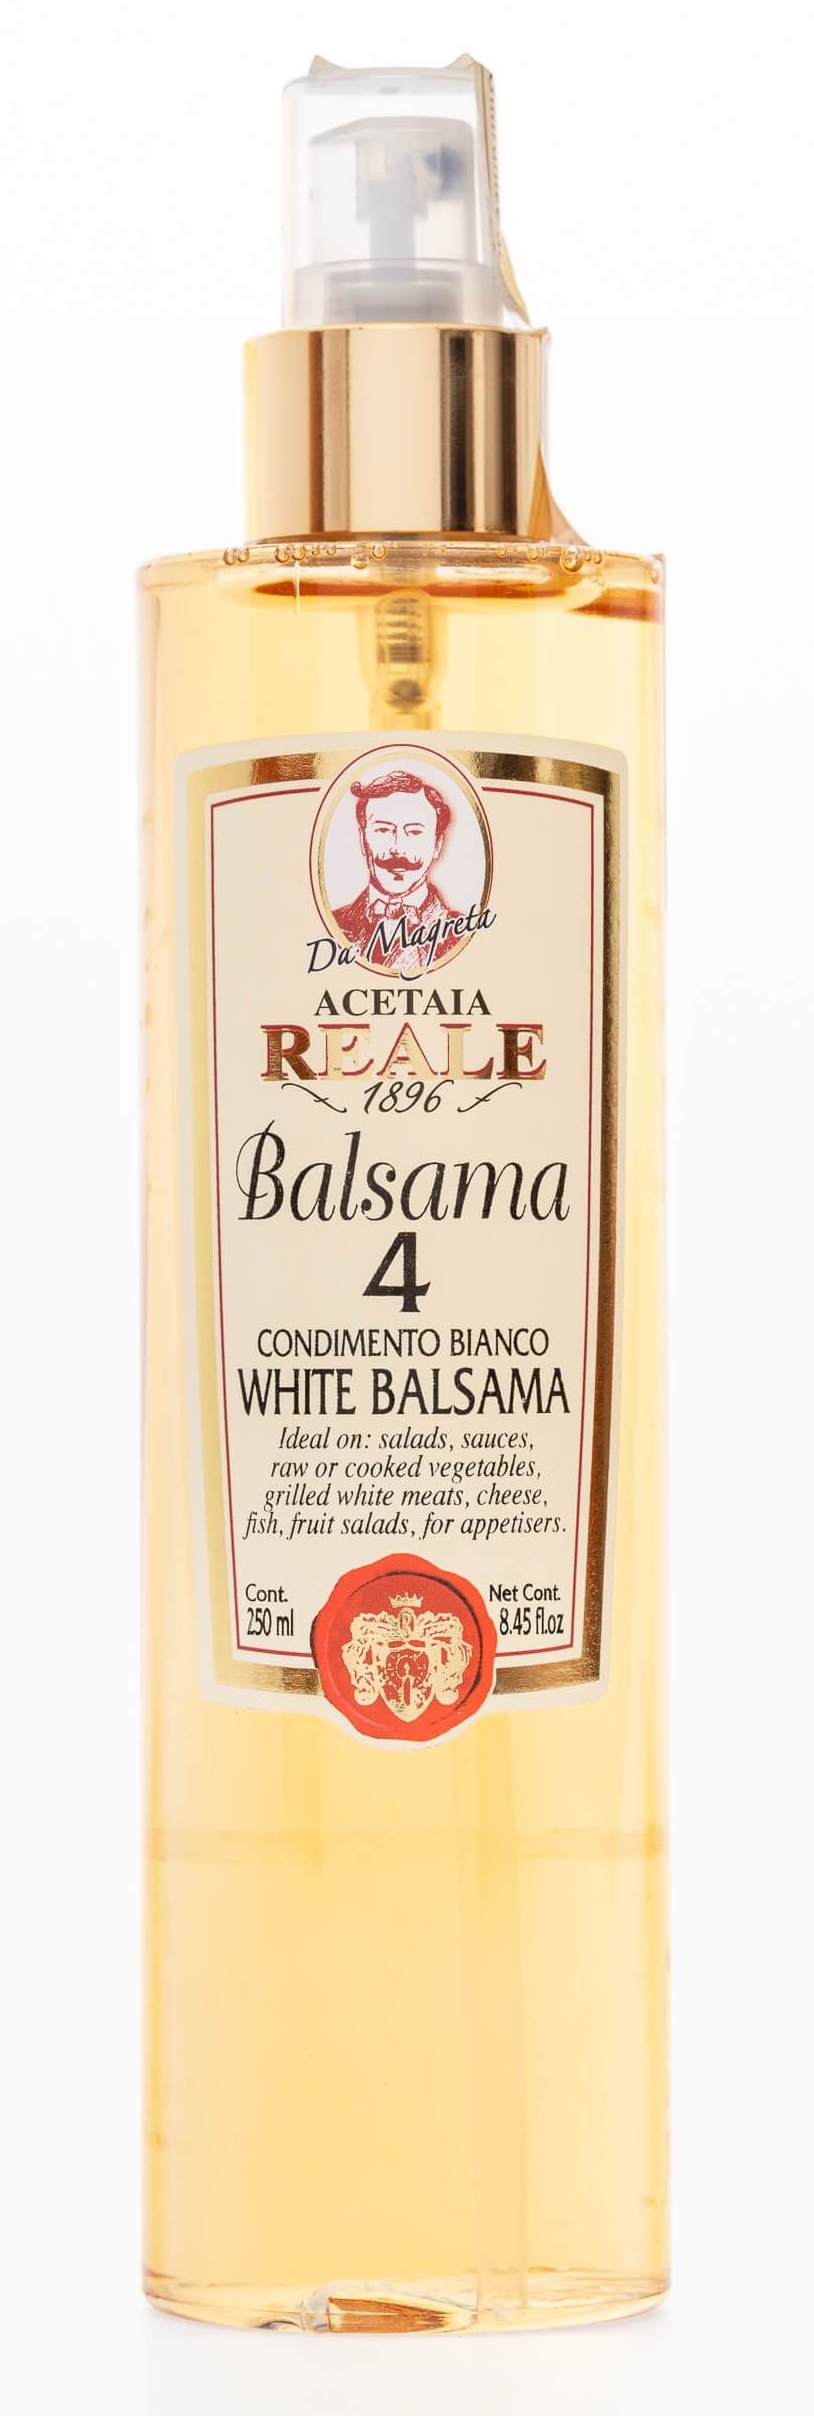 Condiment de vinaigre balsamique blanc – Gourmande boutique